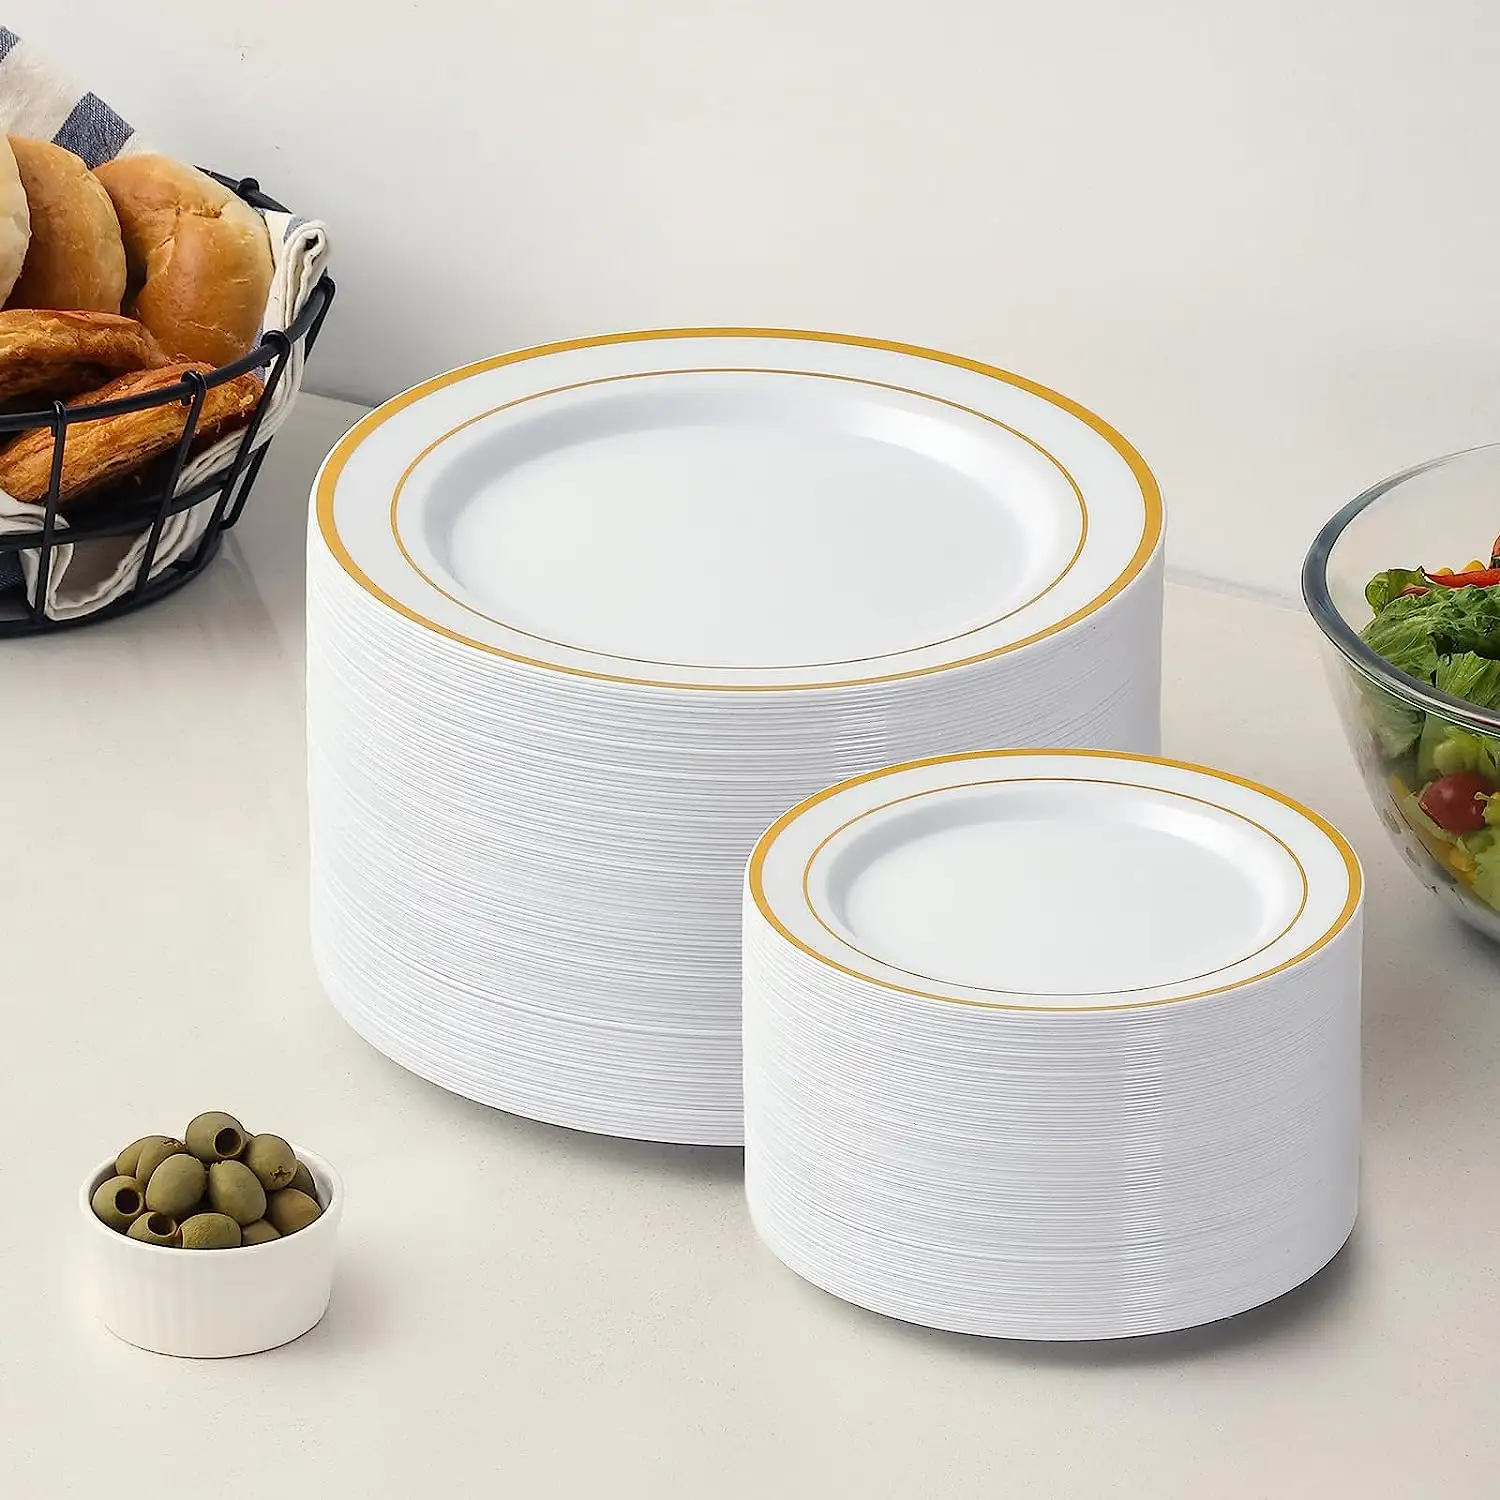 Placas plásticas descartáveis do prato do jantar do partido do branco e do ouro para o restaurante do casamento